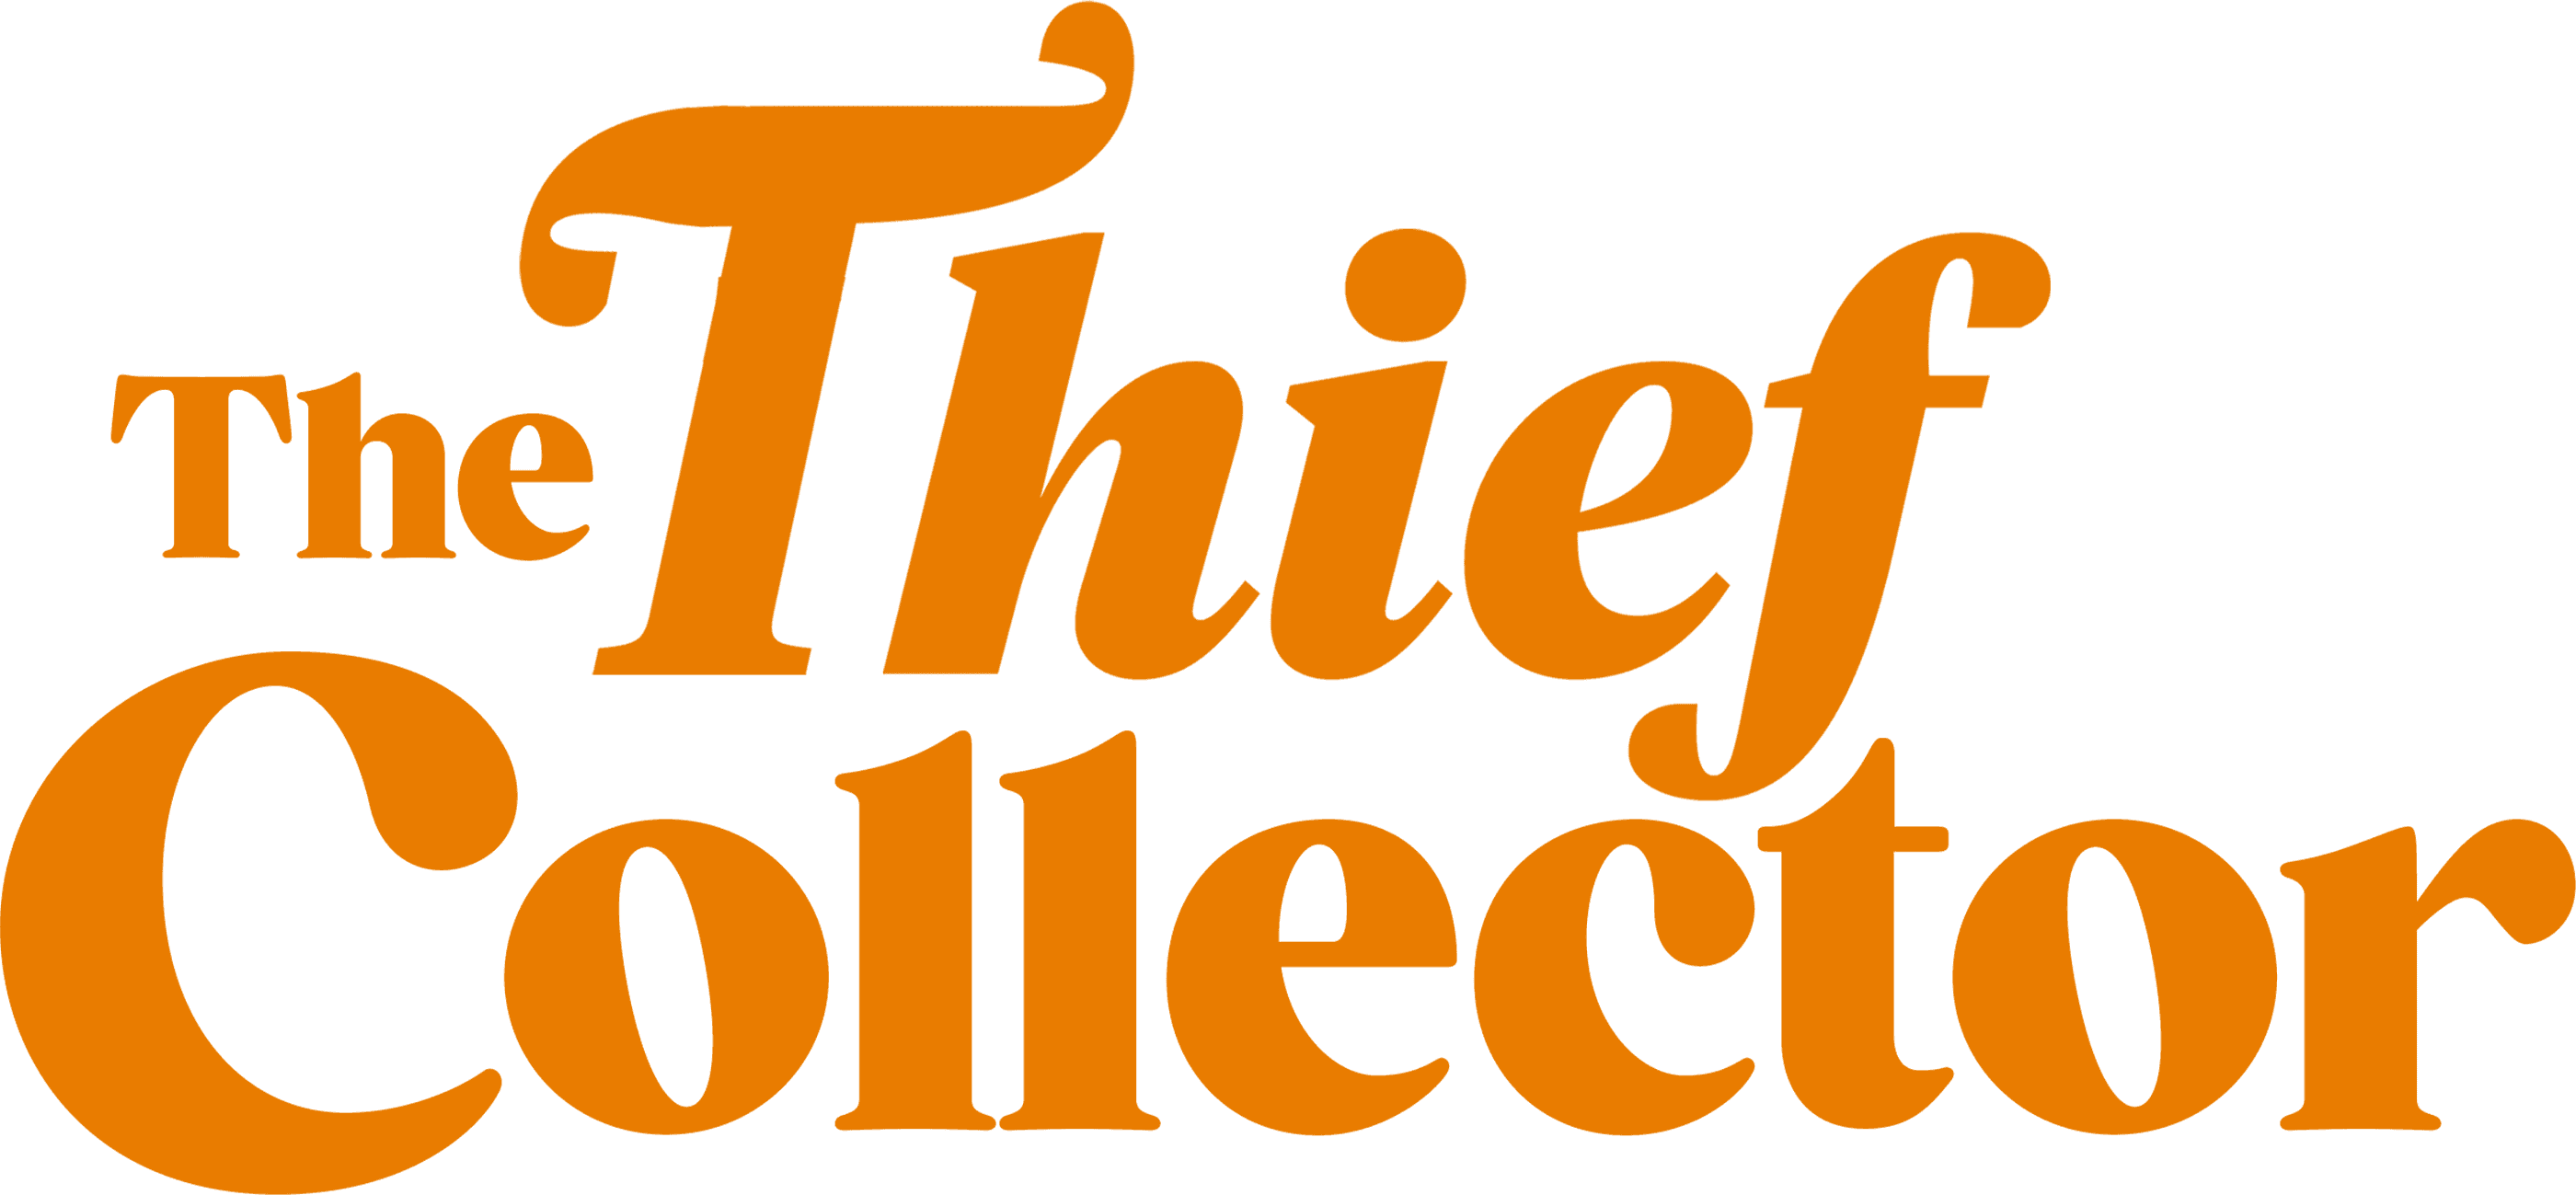 The Thief Collector logo